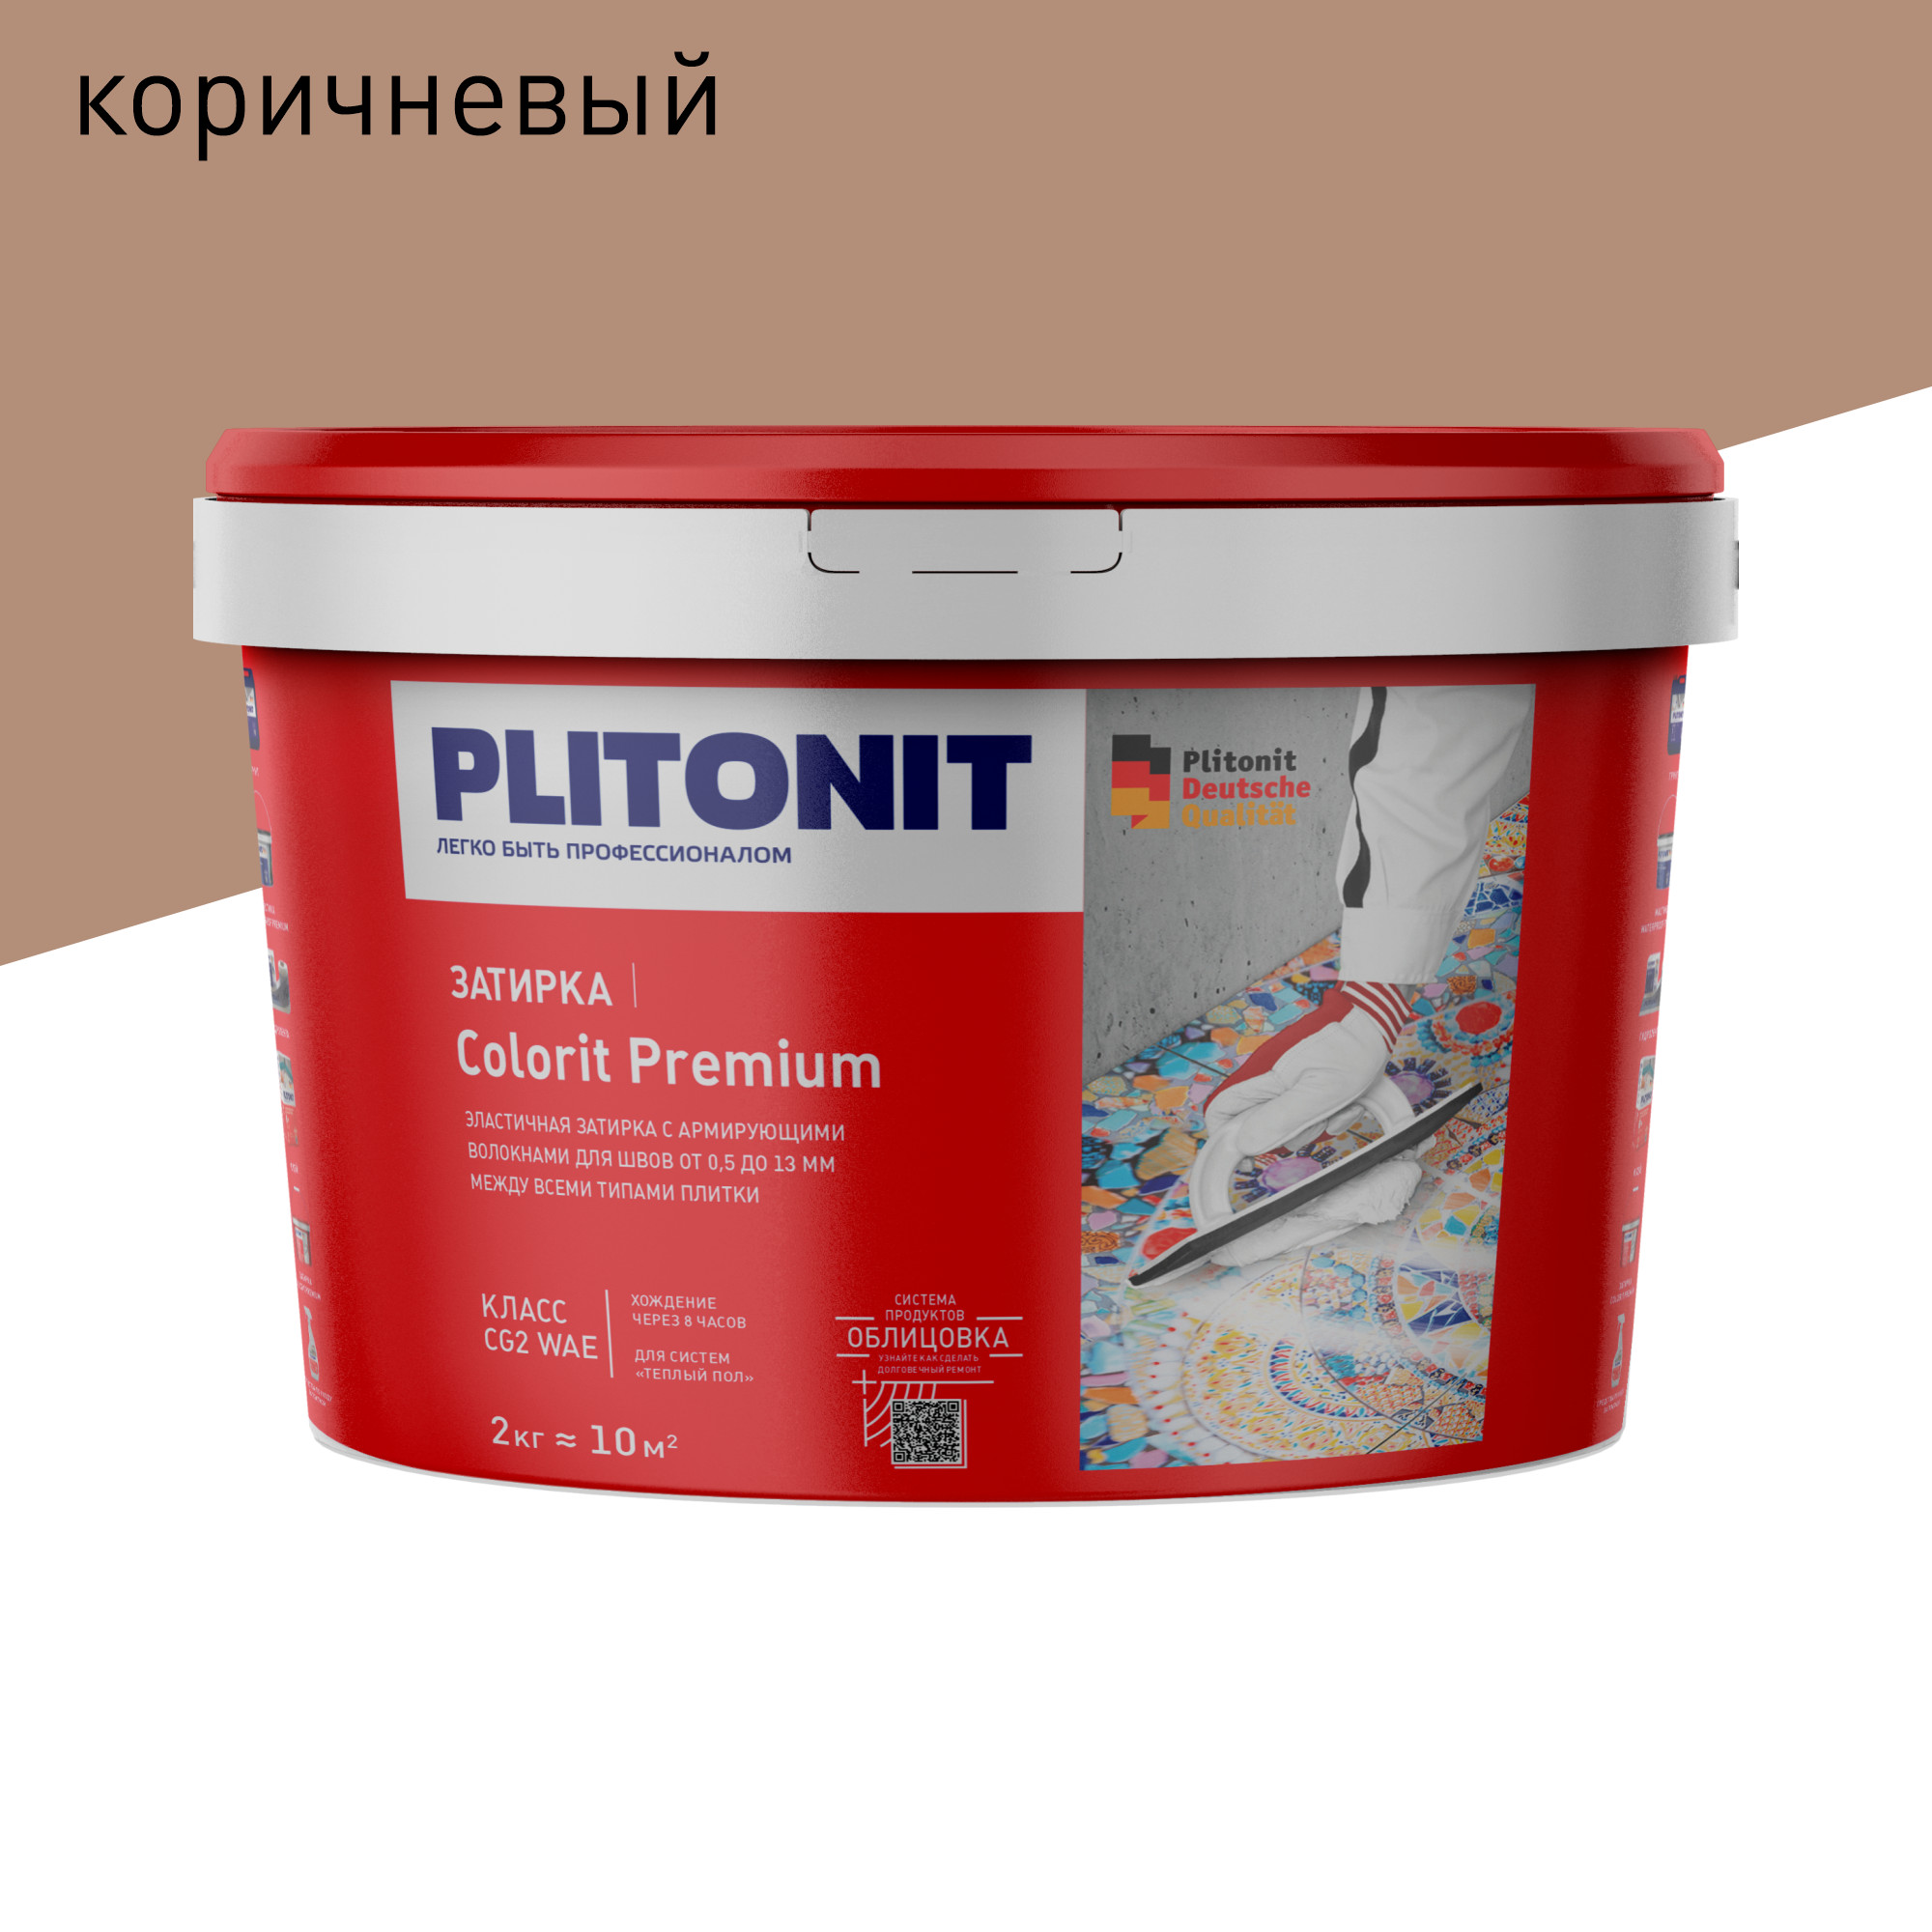 Затирка PLITONIT Colorit Premium коричневая 2 кг затирка эпоксидная plitonit colorit easyfill серебристо серая 2 кг